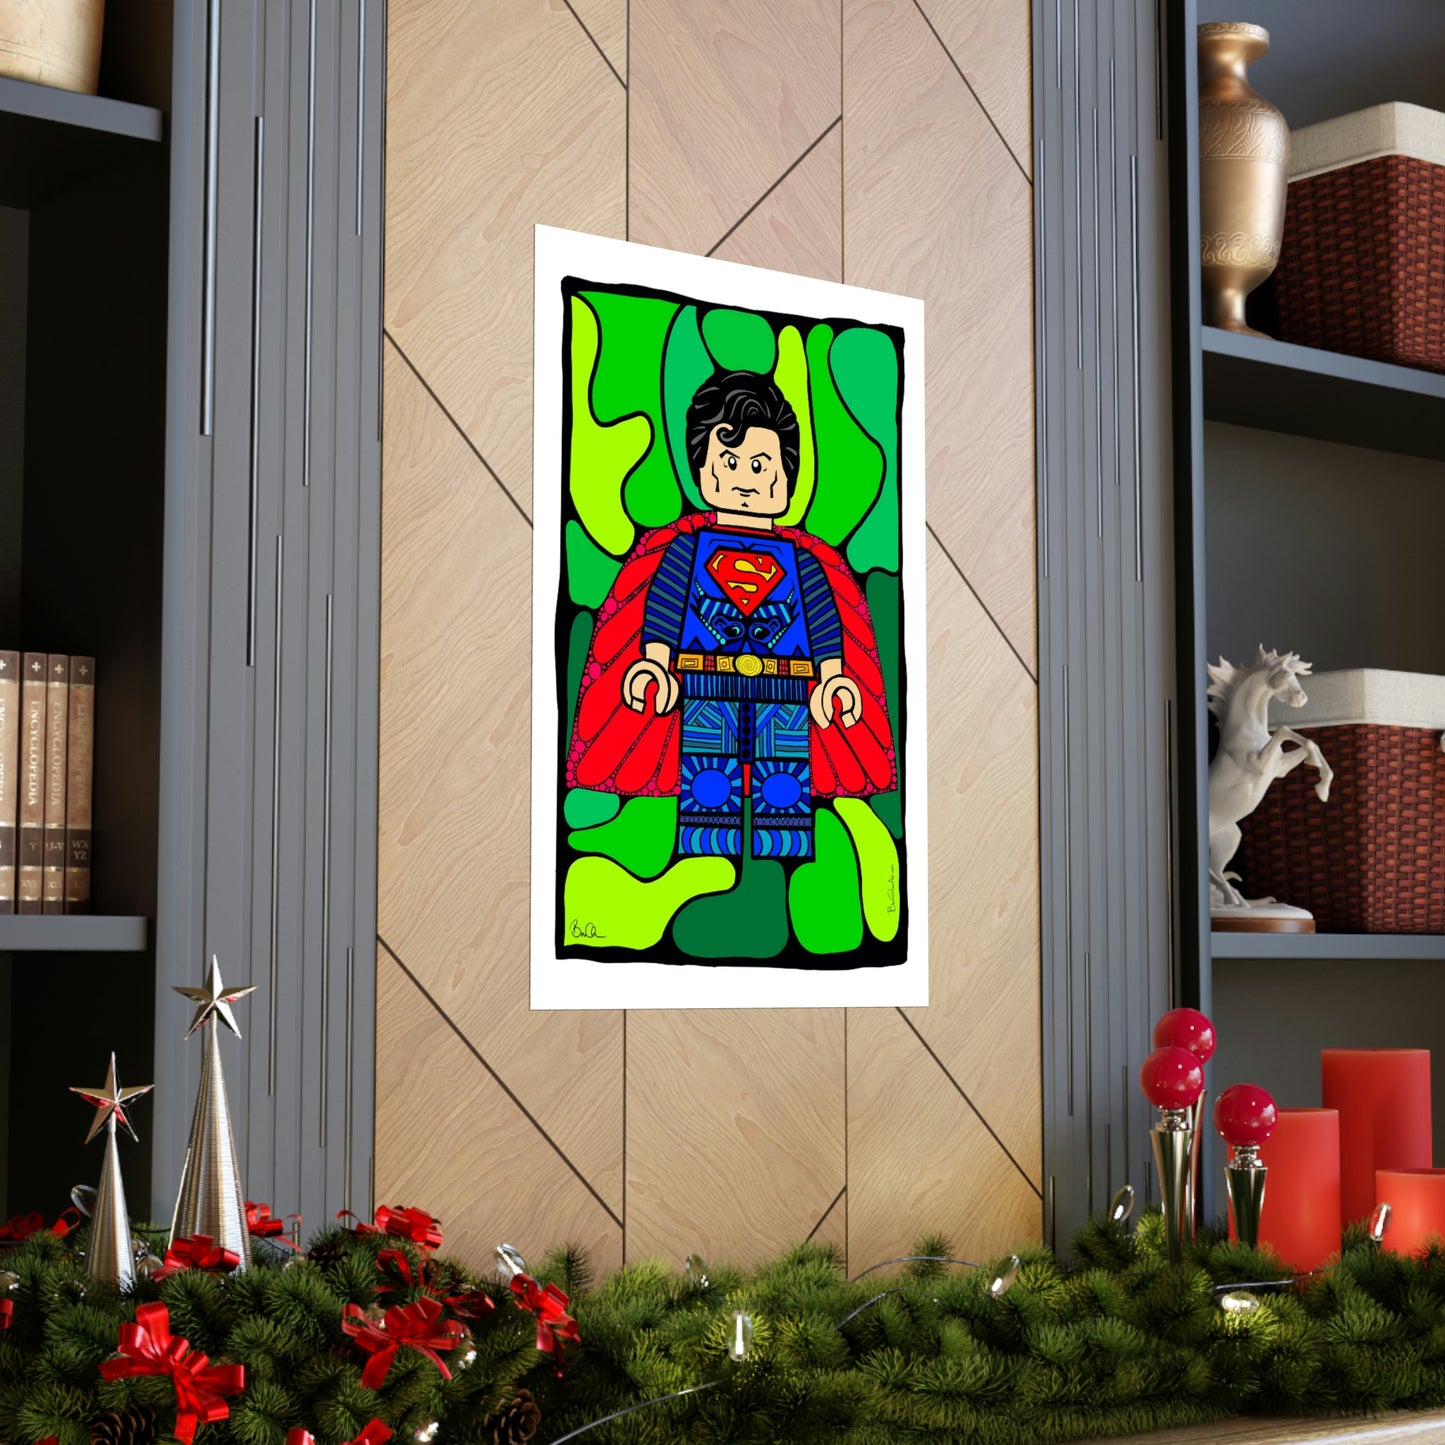 SUPER MAN Lego Pop Art